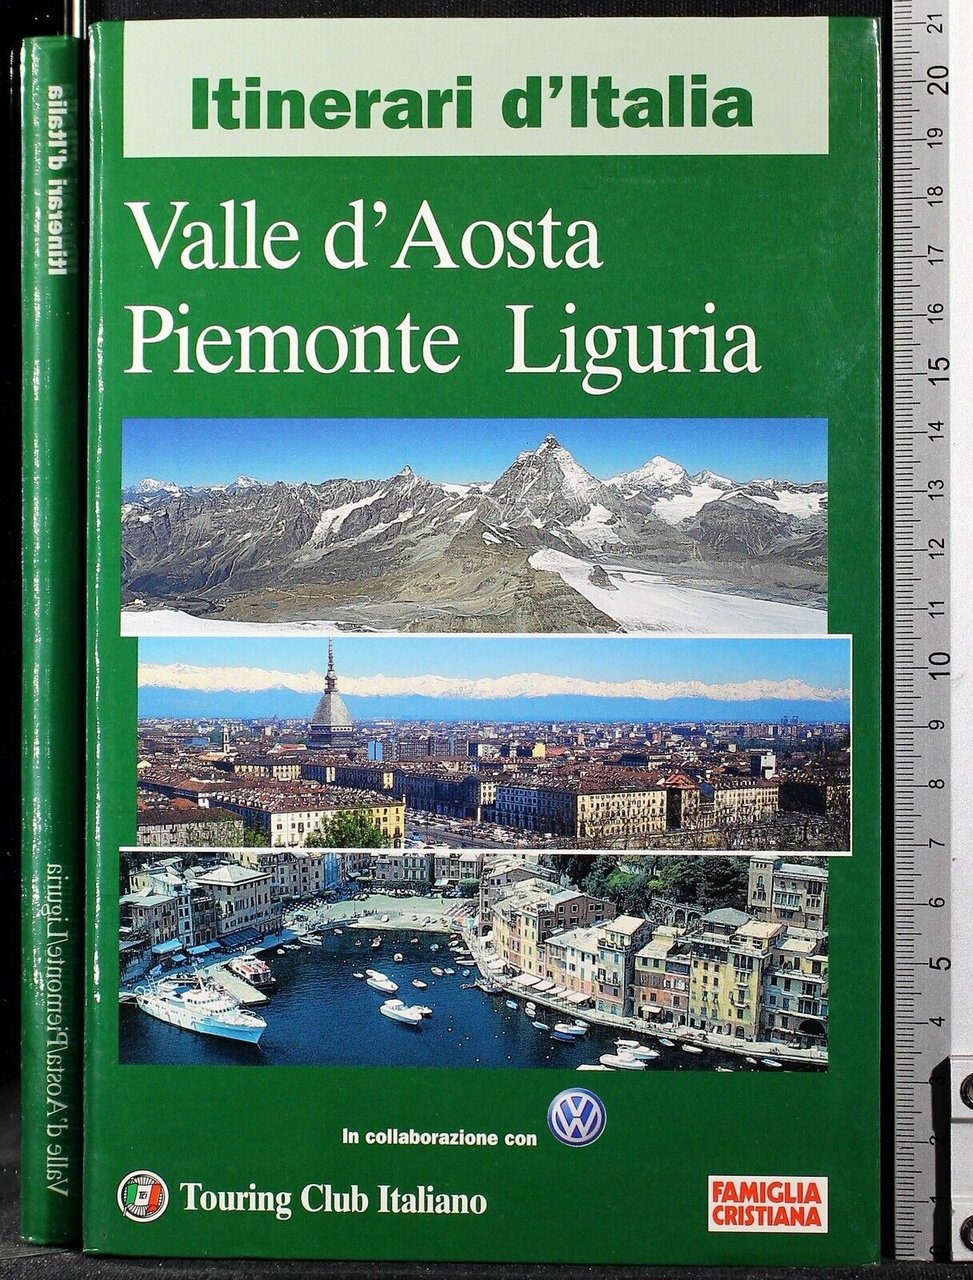 Itinerari d'Italia. Valle d'Aosta Piemonte Liguria